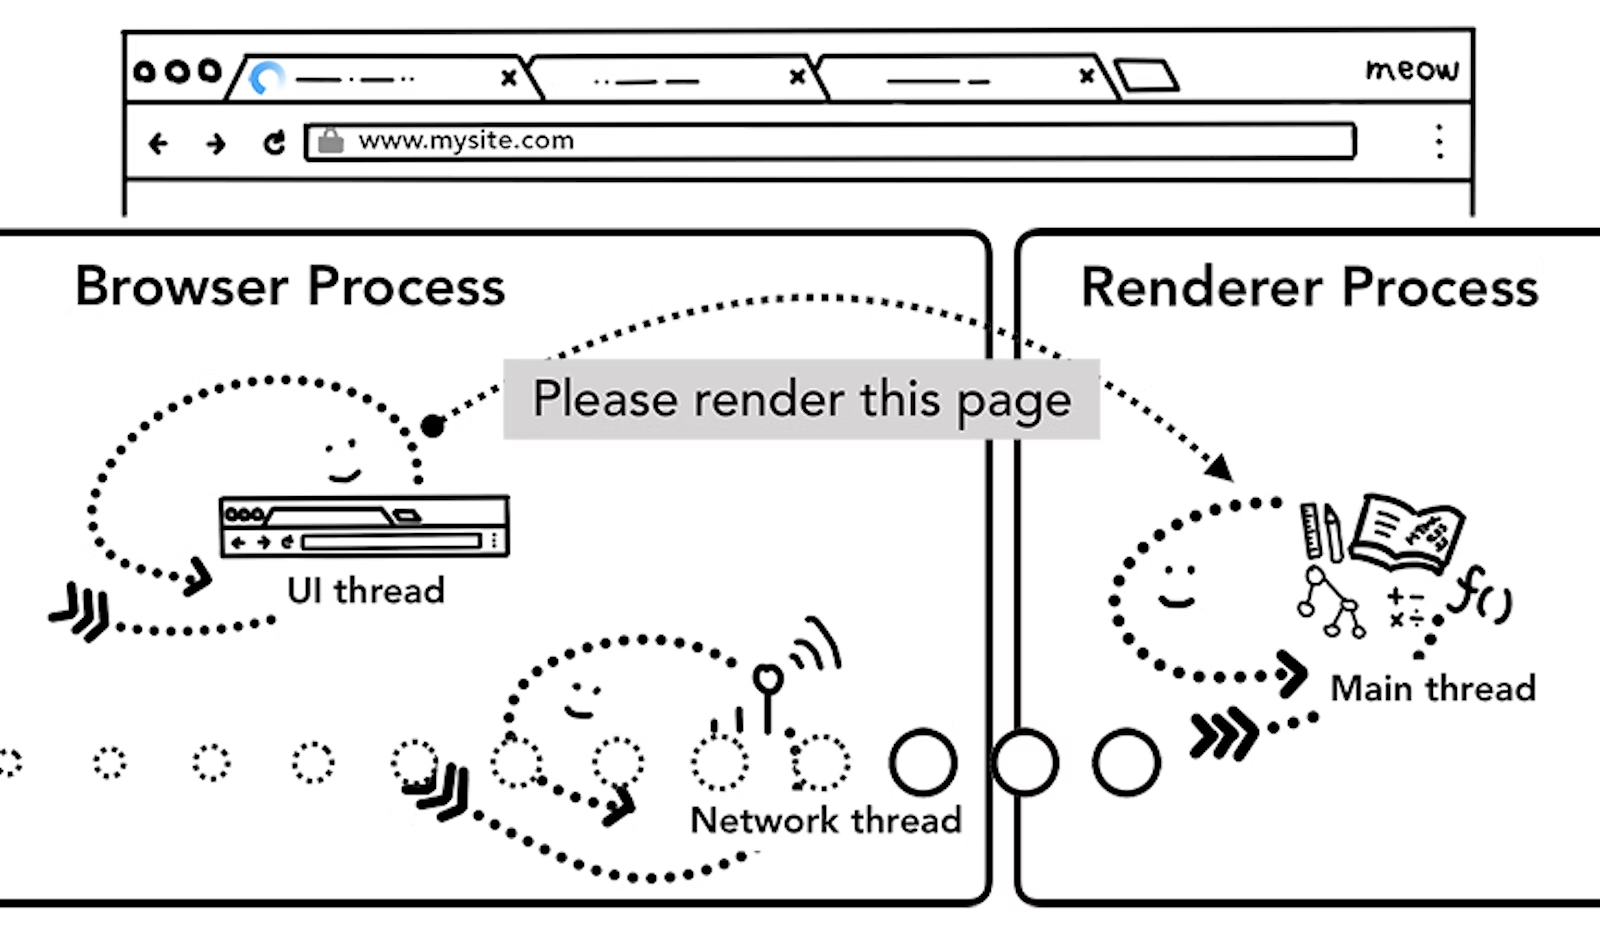 그림 6. 브라우저 프로세스와 렌더러 프로세스 사이의 렌더링 요청 IPC